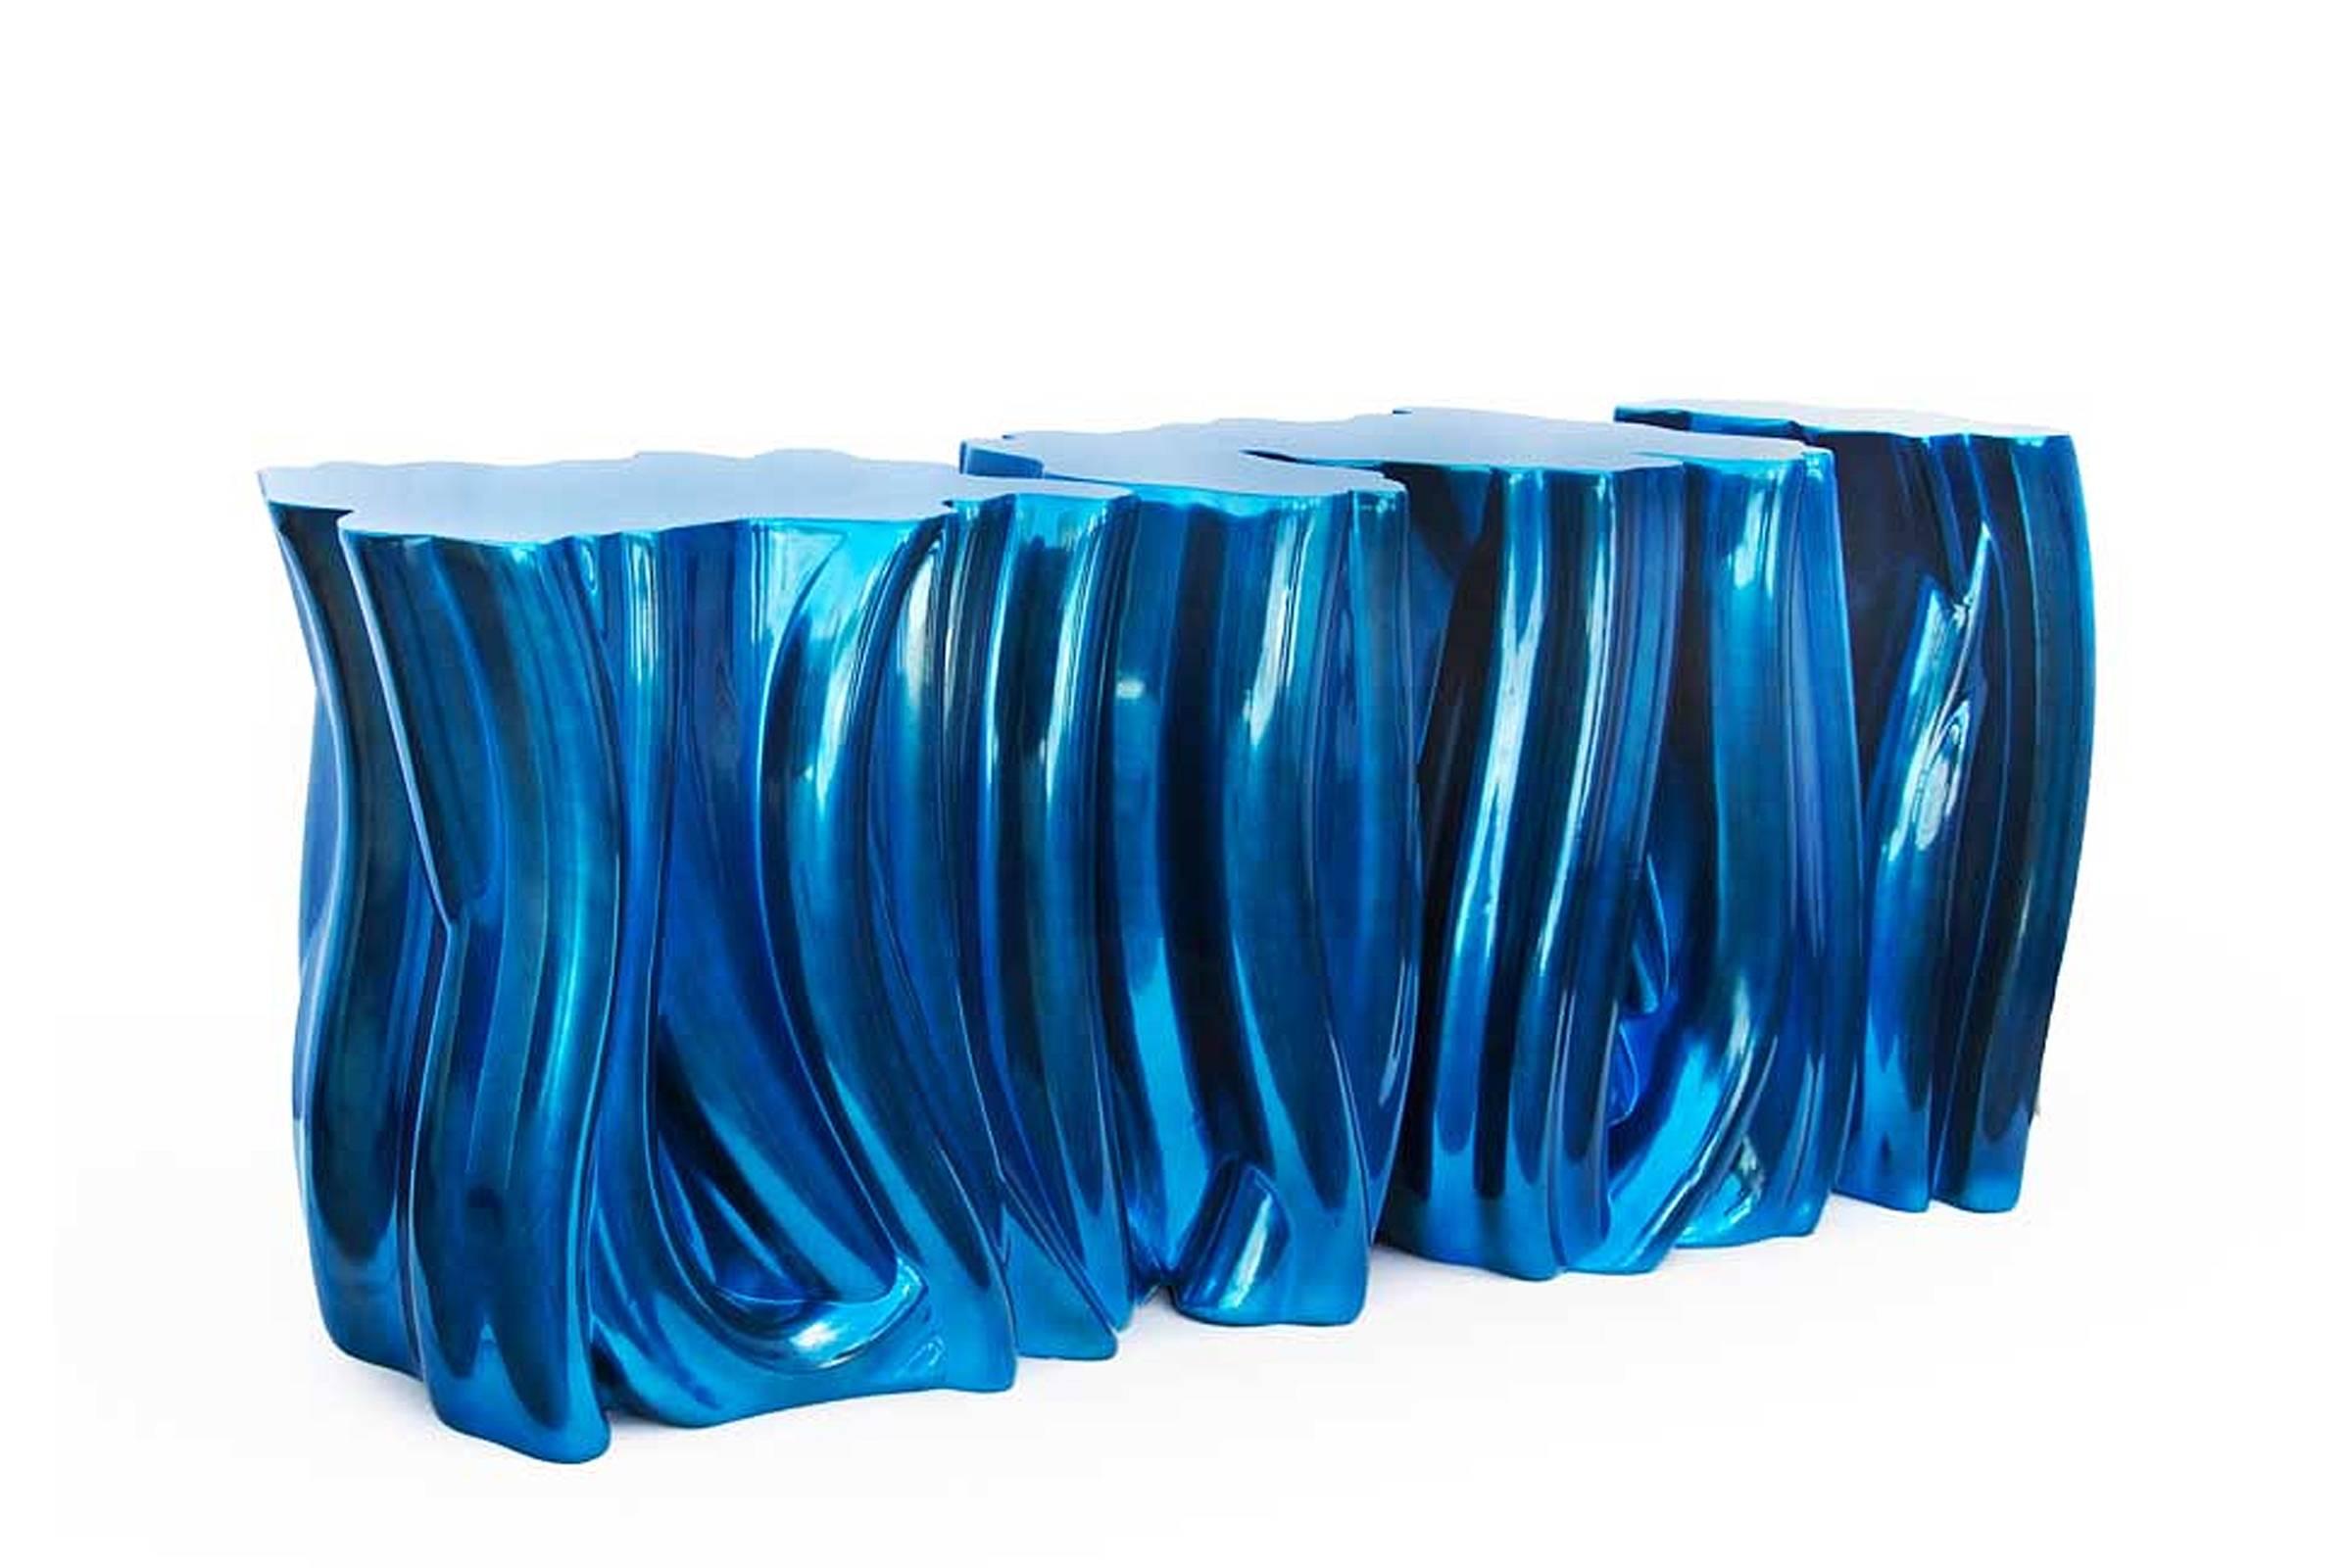 Konsole Electric Blue mit Struktur aus Fiberglas mit 
Polyurethan lackiert, handgefertigt und lackiert. Konsole
in den Ausführungen Electric Blue. Auch in Purple Blue erhältlich 
Ausführungen, andere Ausführungen, auf Anfrage 

